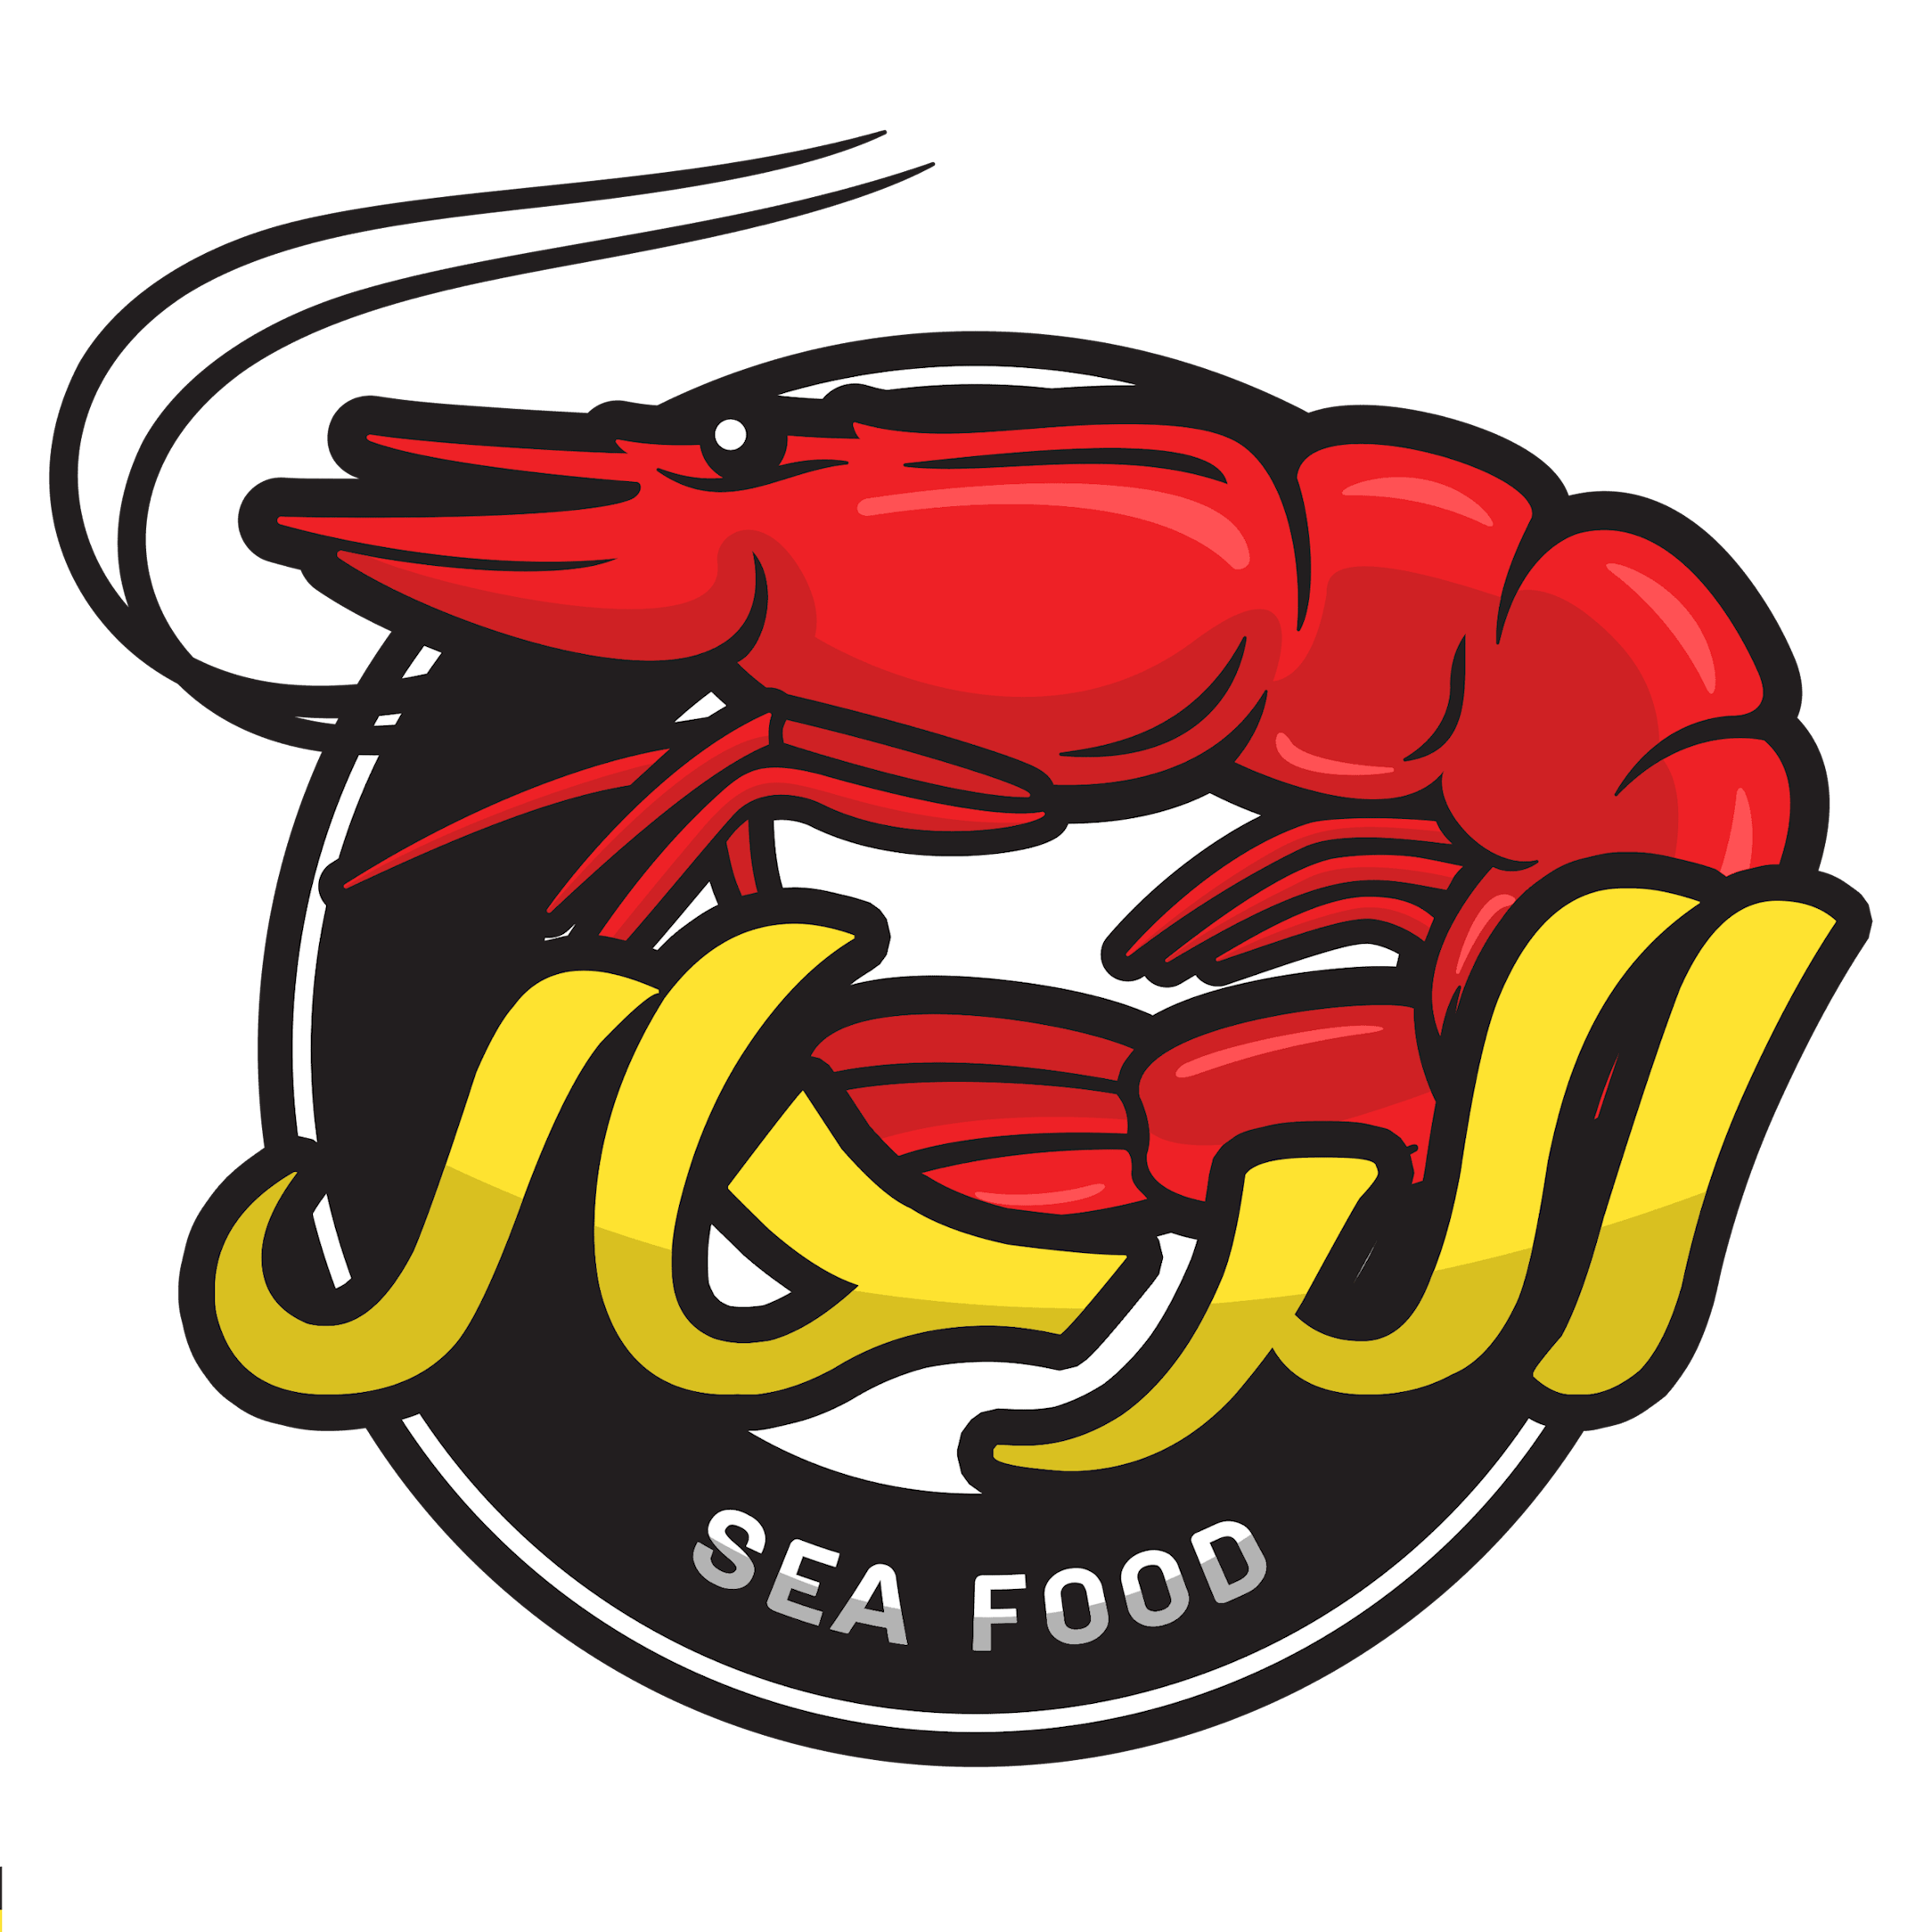 Rahal Seafood